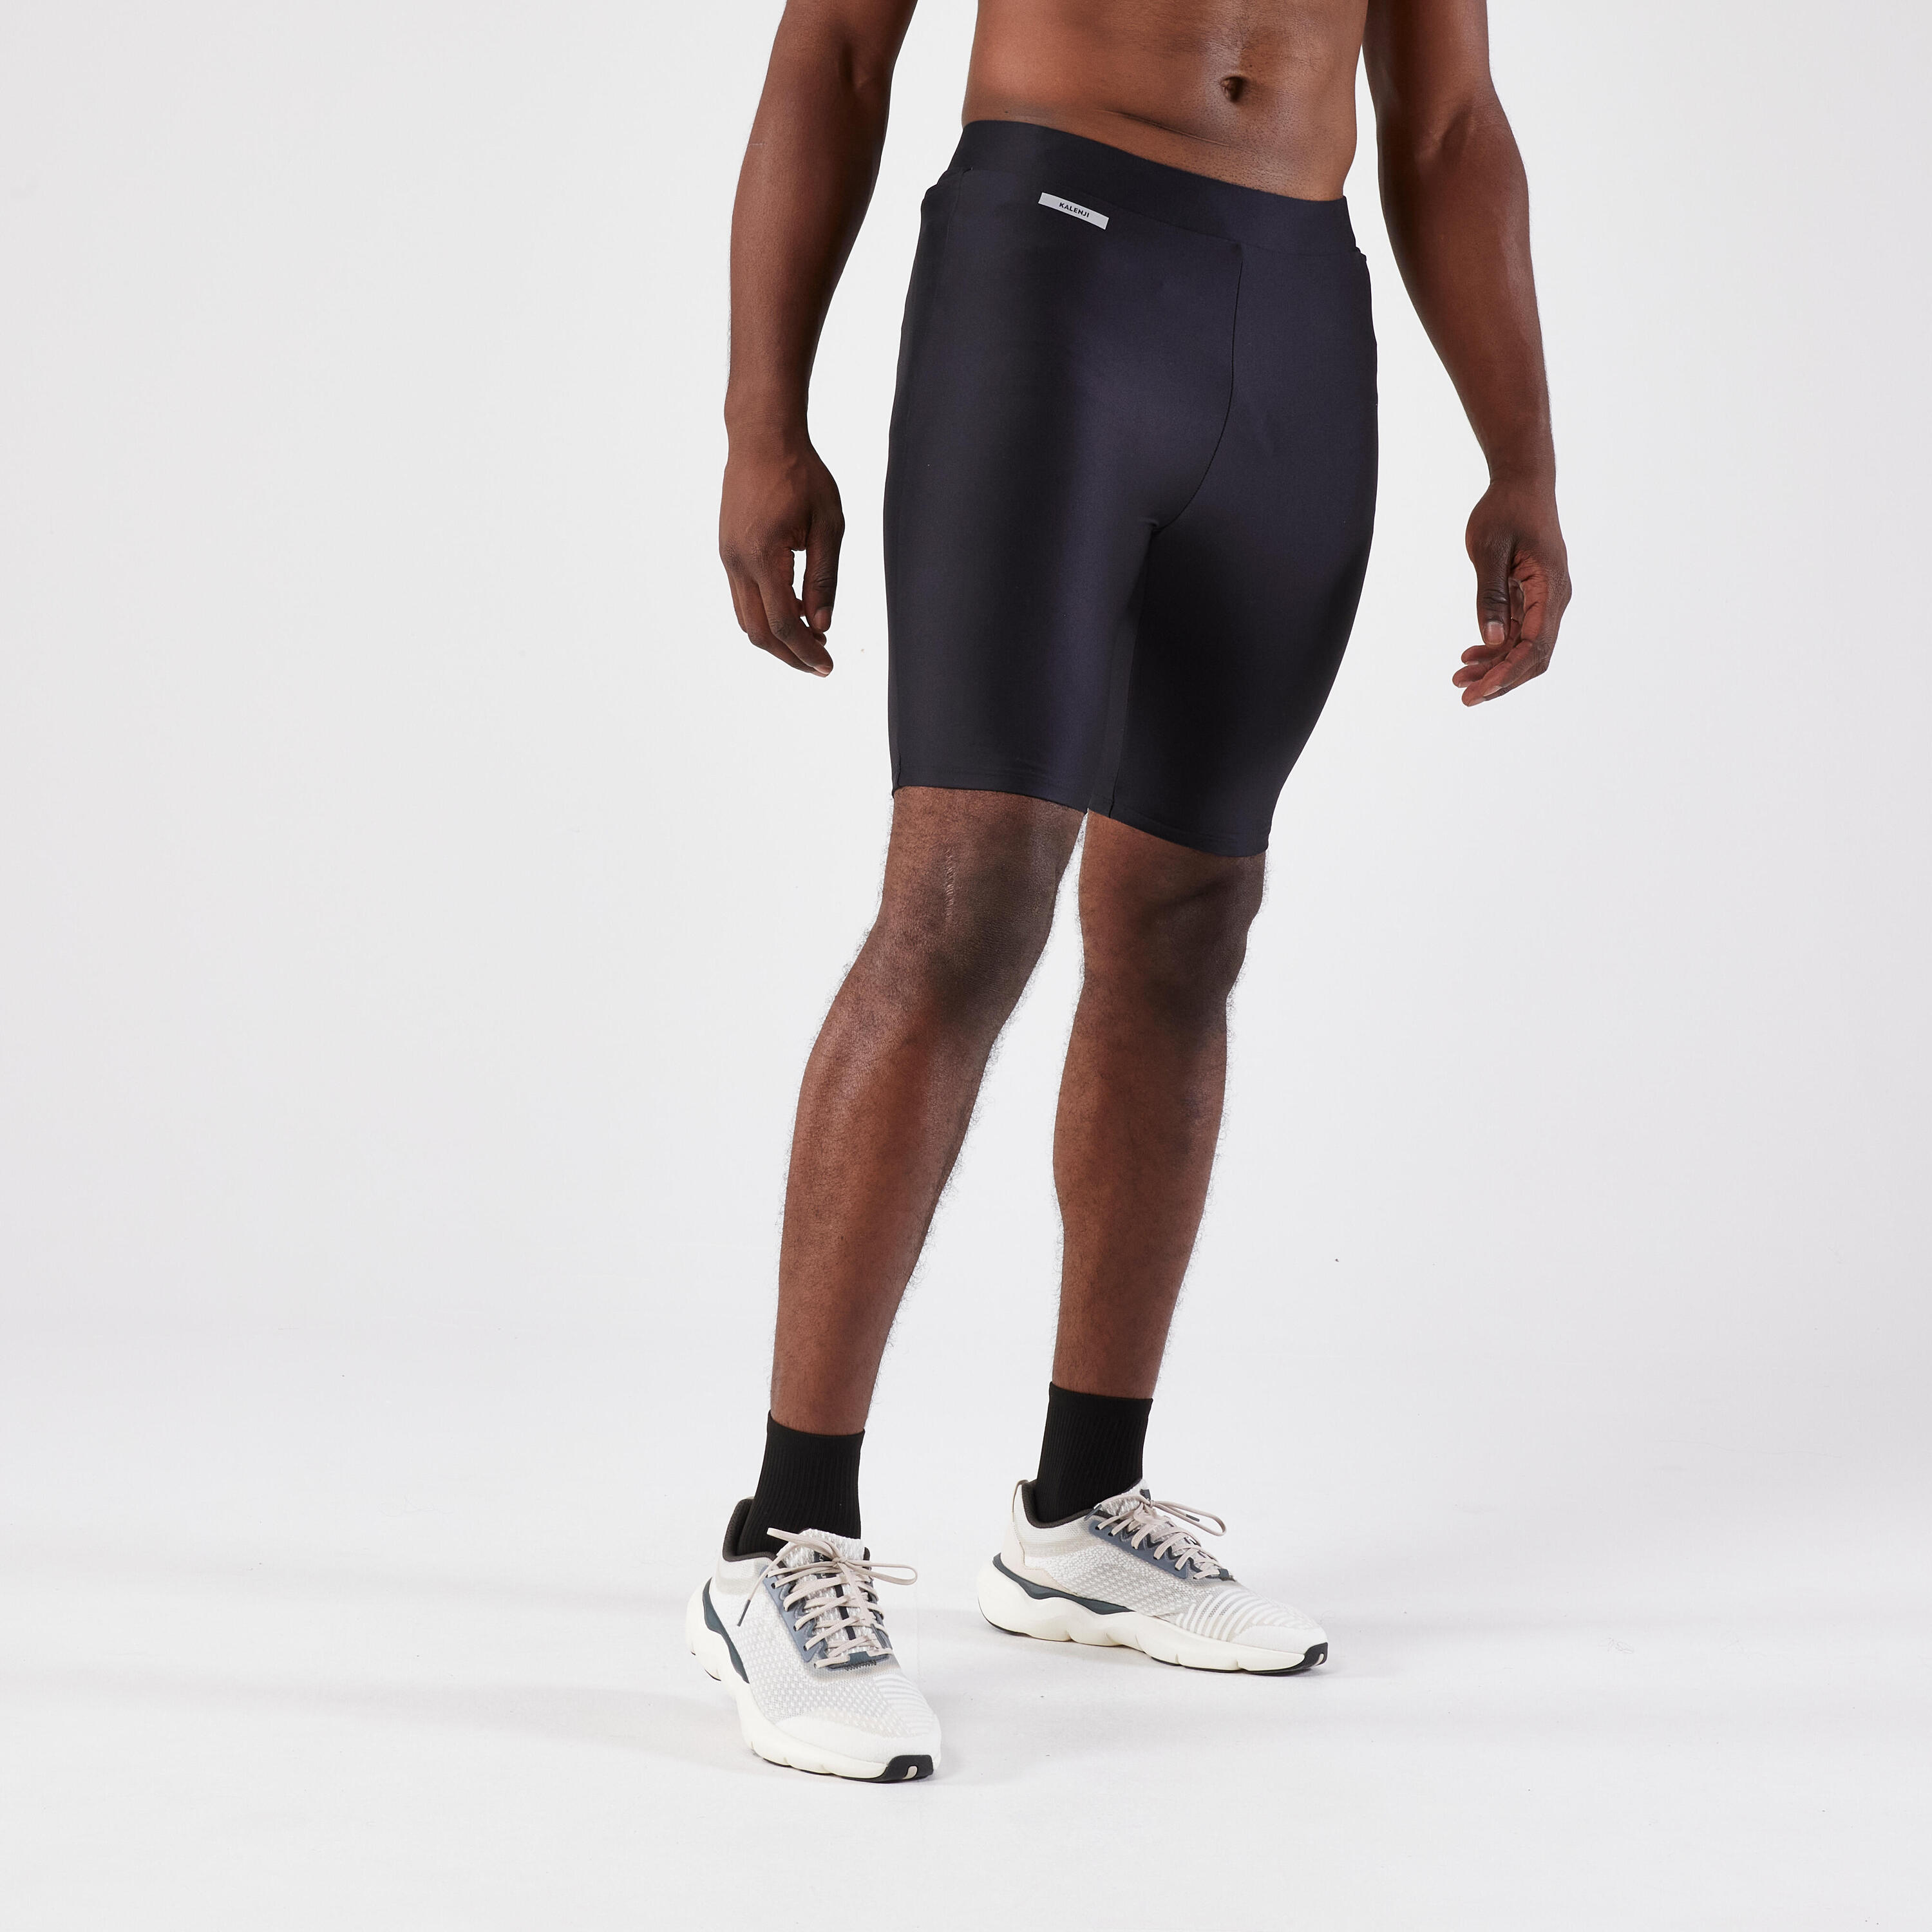 Men's Running Tight Shorts - Kiprun Run 100 Black 6/7